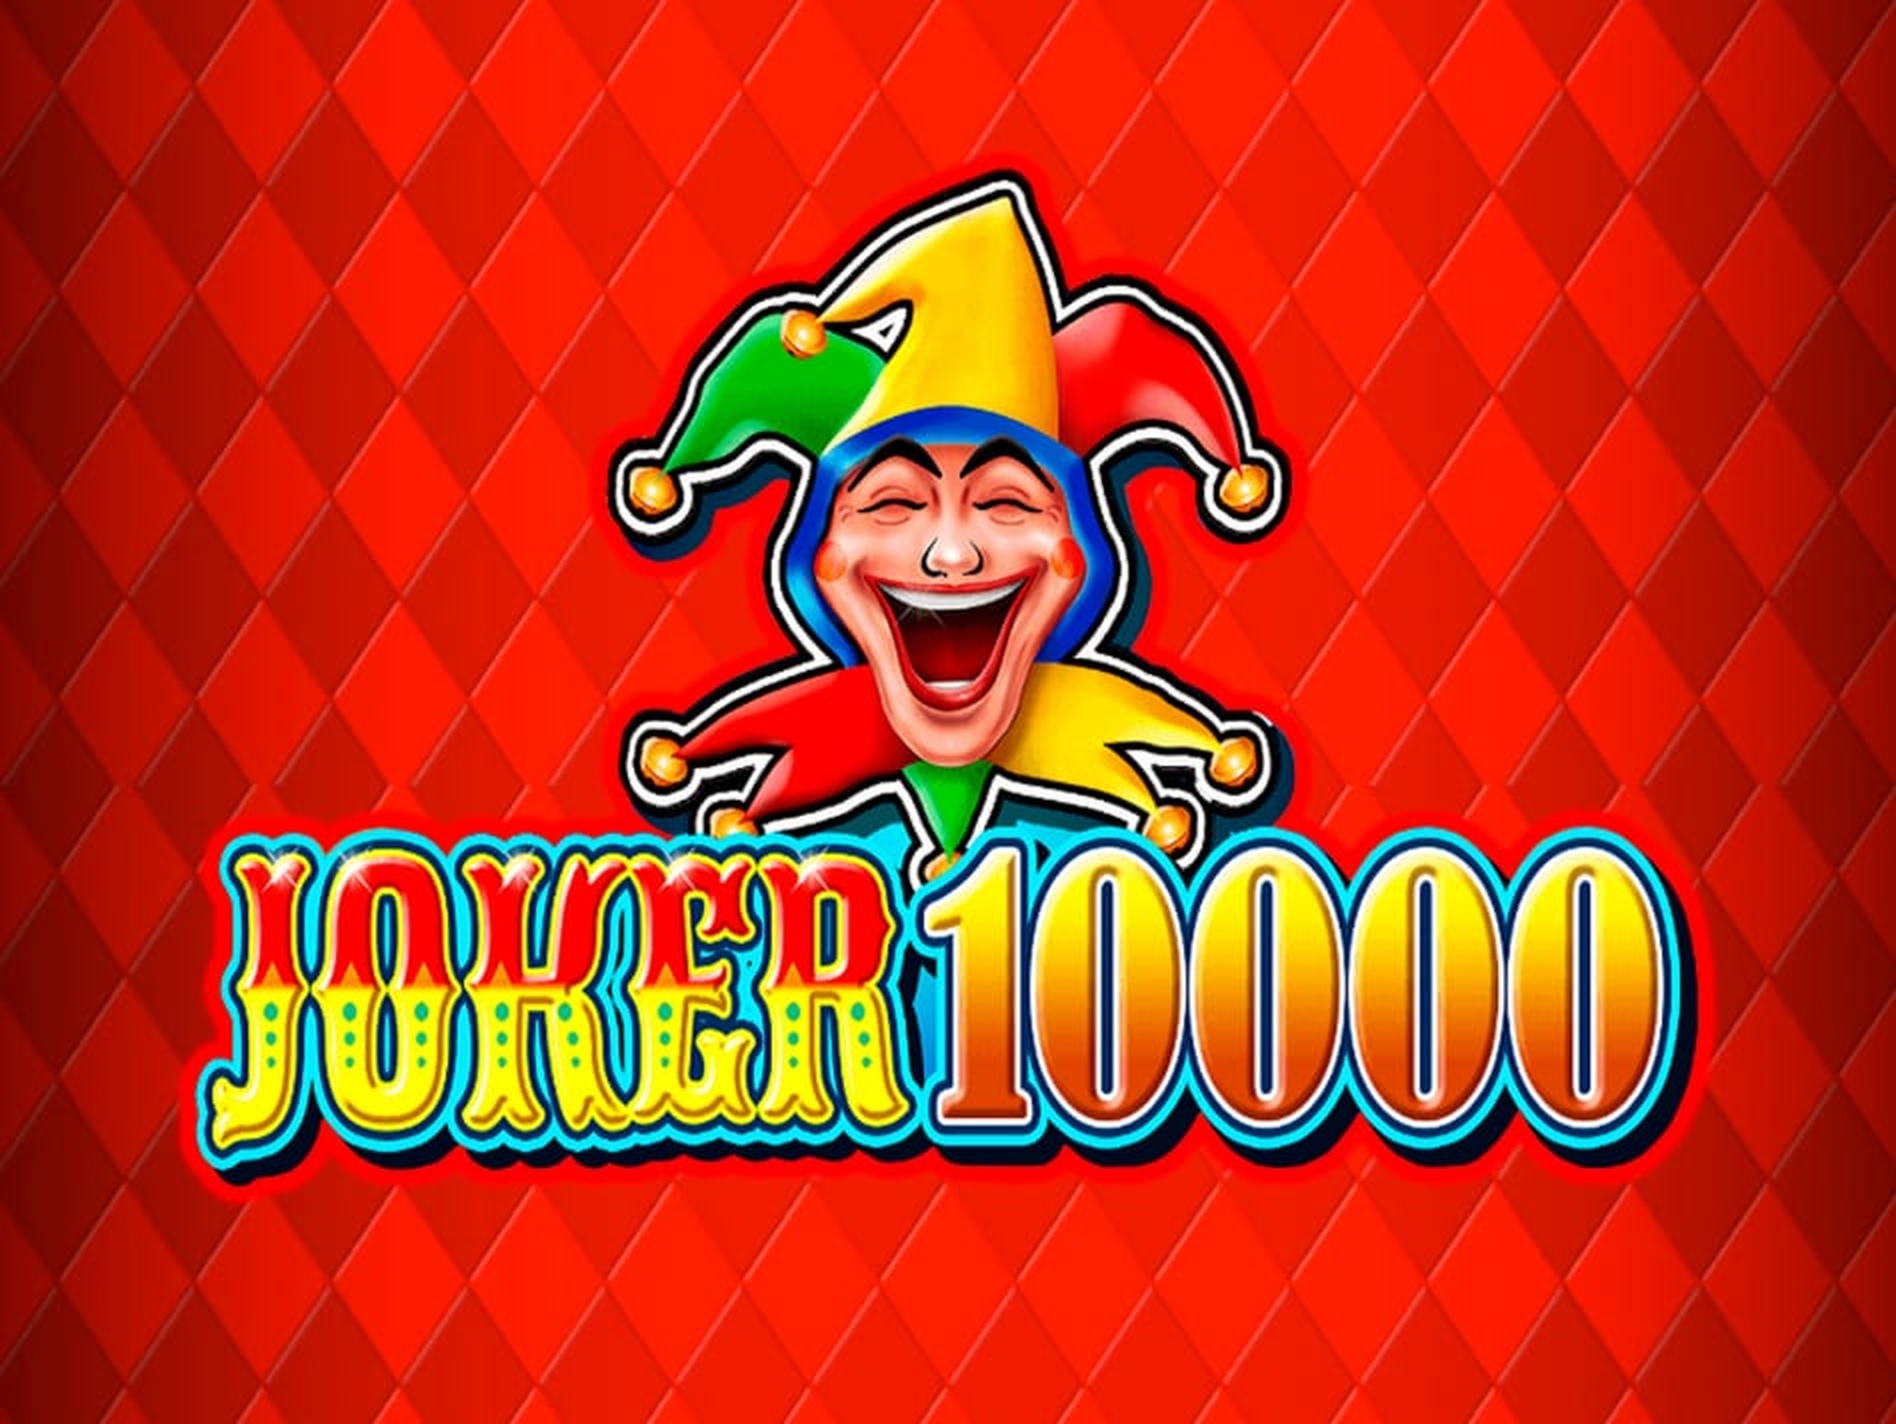 Joker 10000